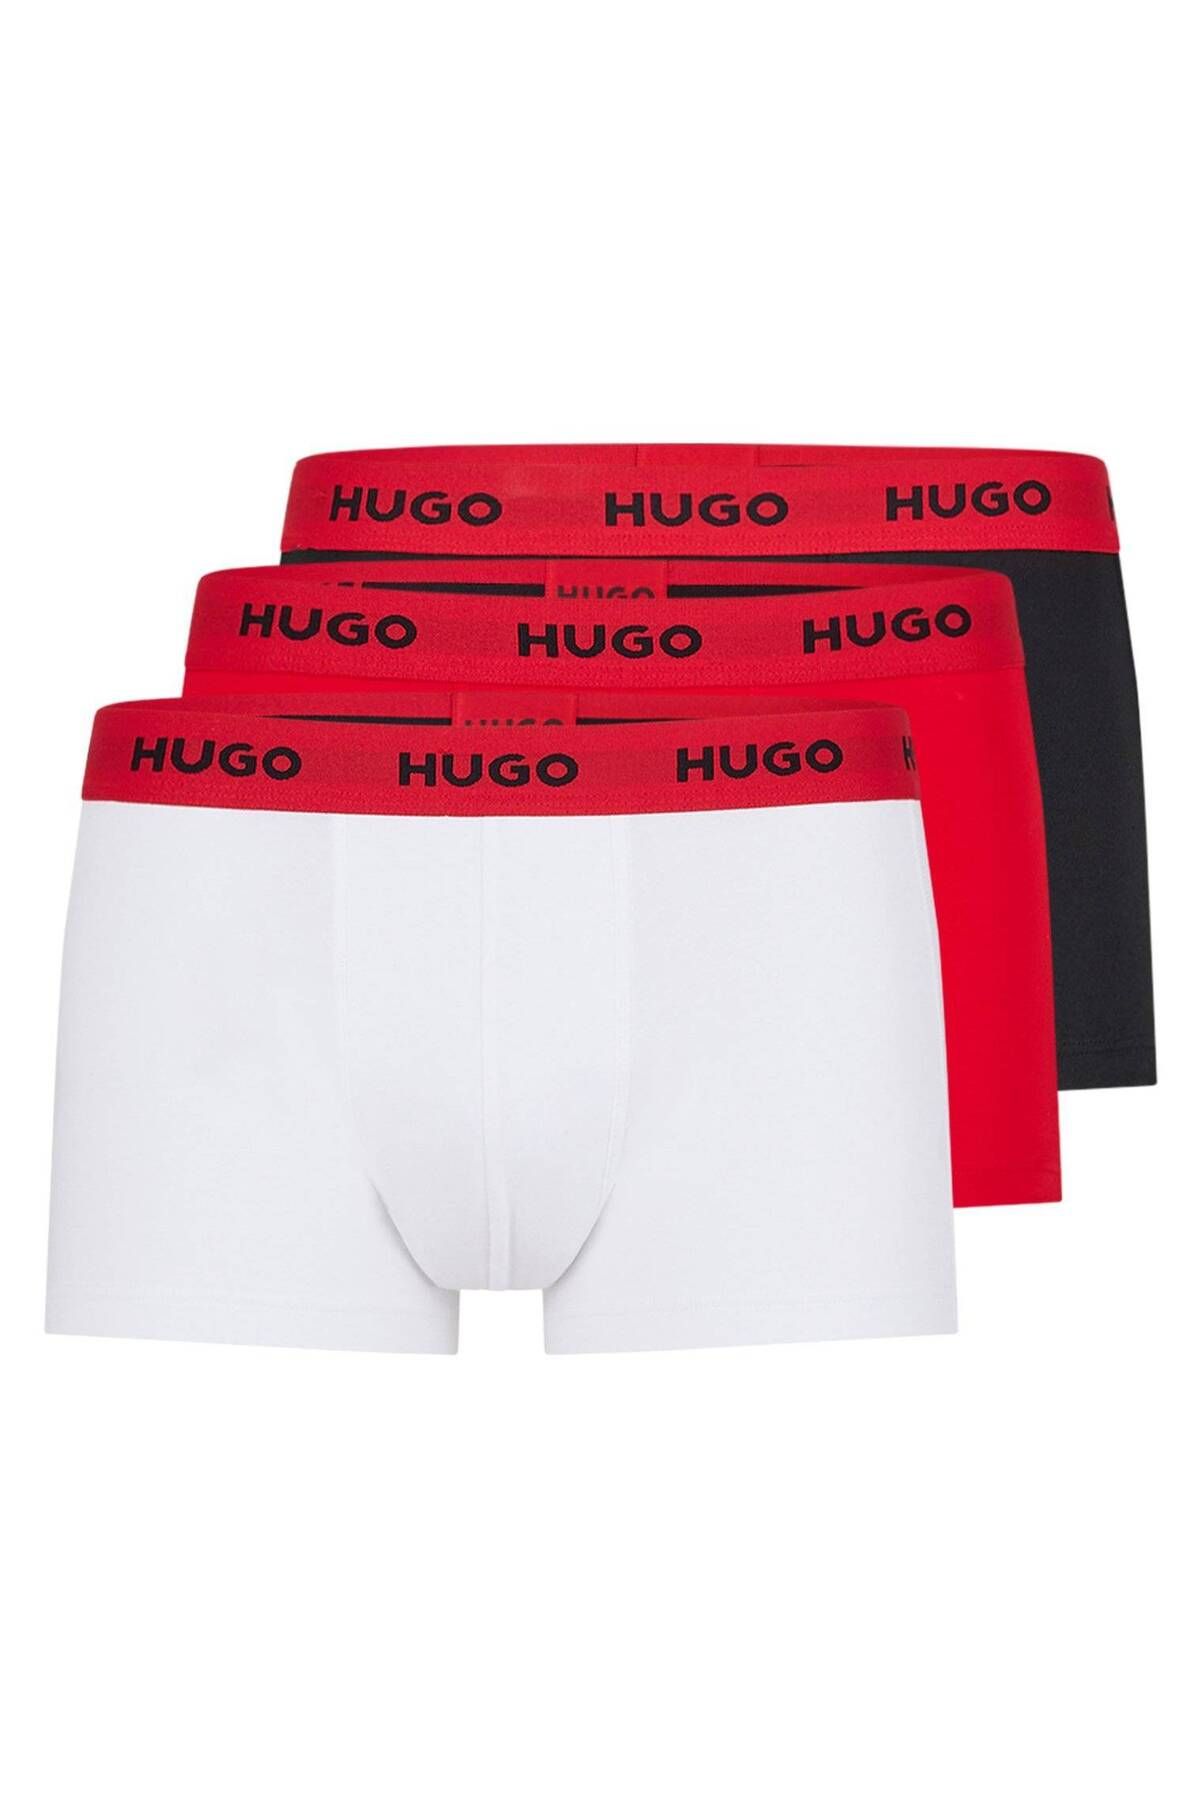 Hugo Boss Boxer